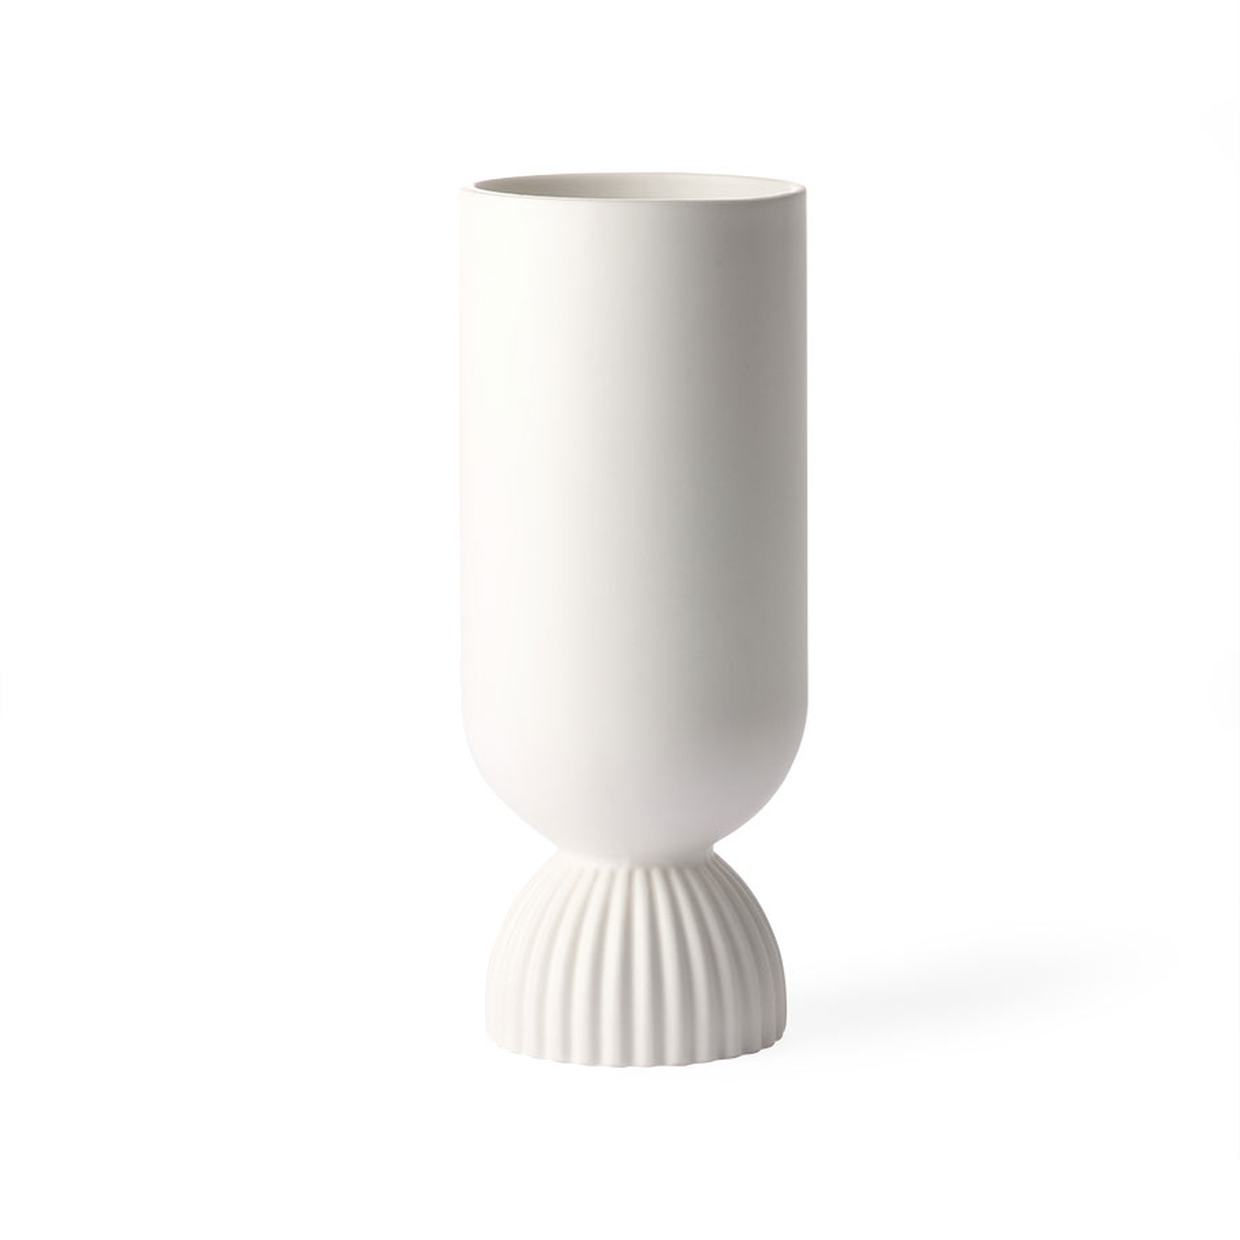 Ceramic flower vase ribbed base white